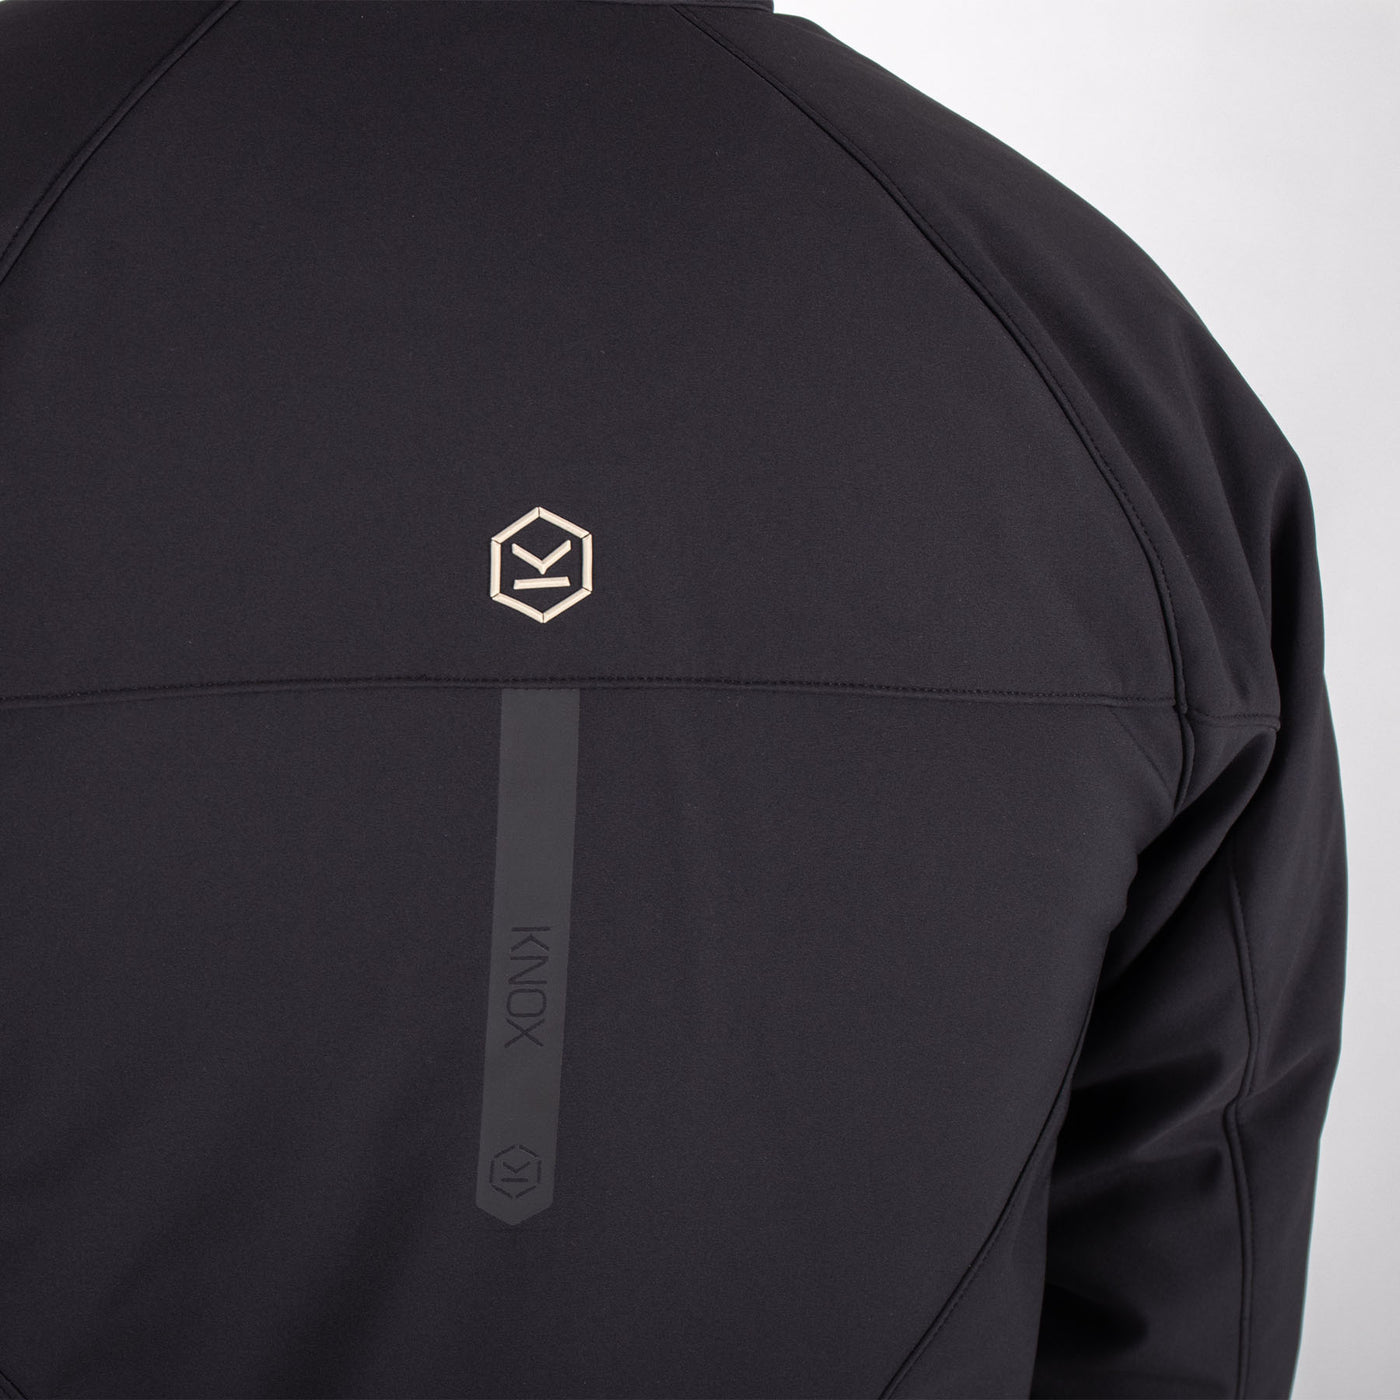 Knox Softshell Jacket Dual Pro Black